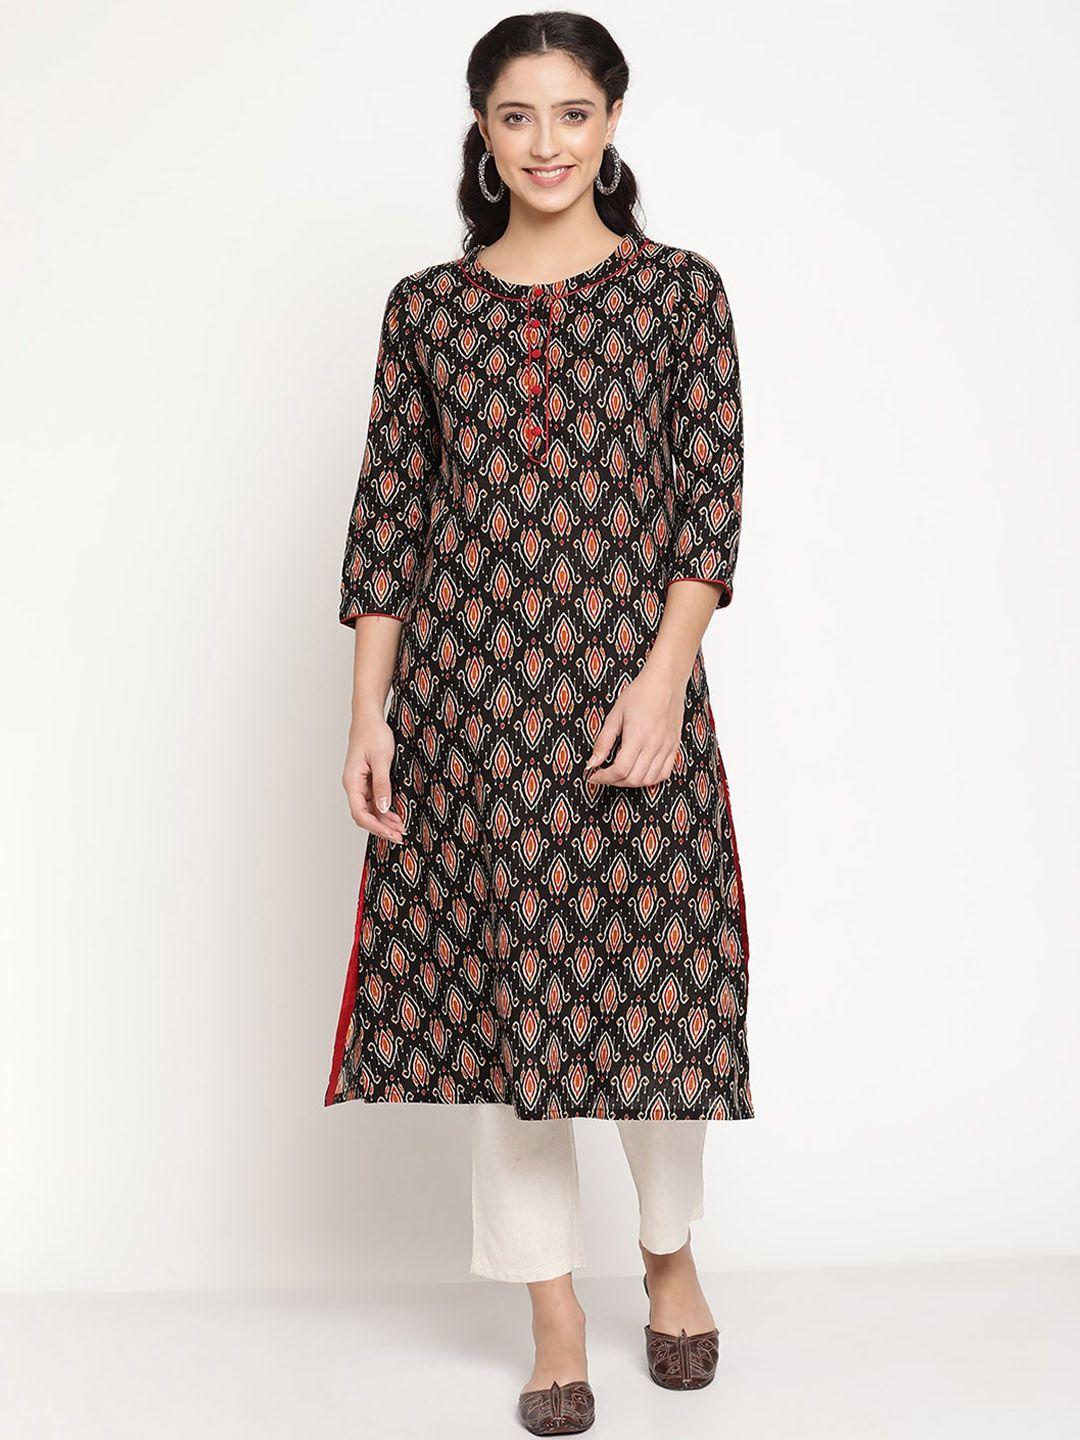 be indi women ethnic motifs printed indie prints cotton kurta